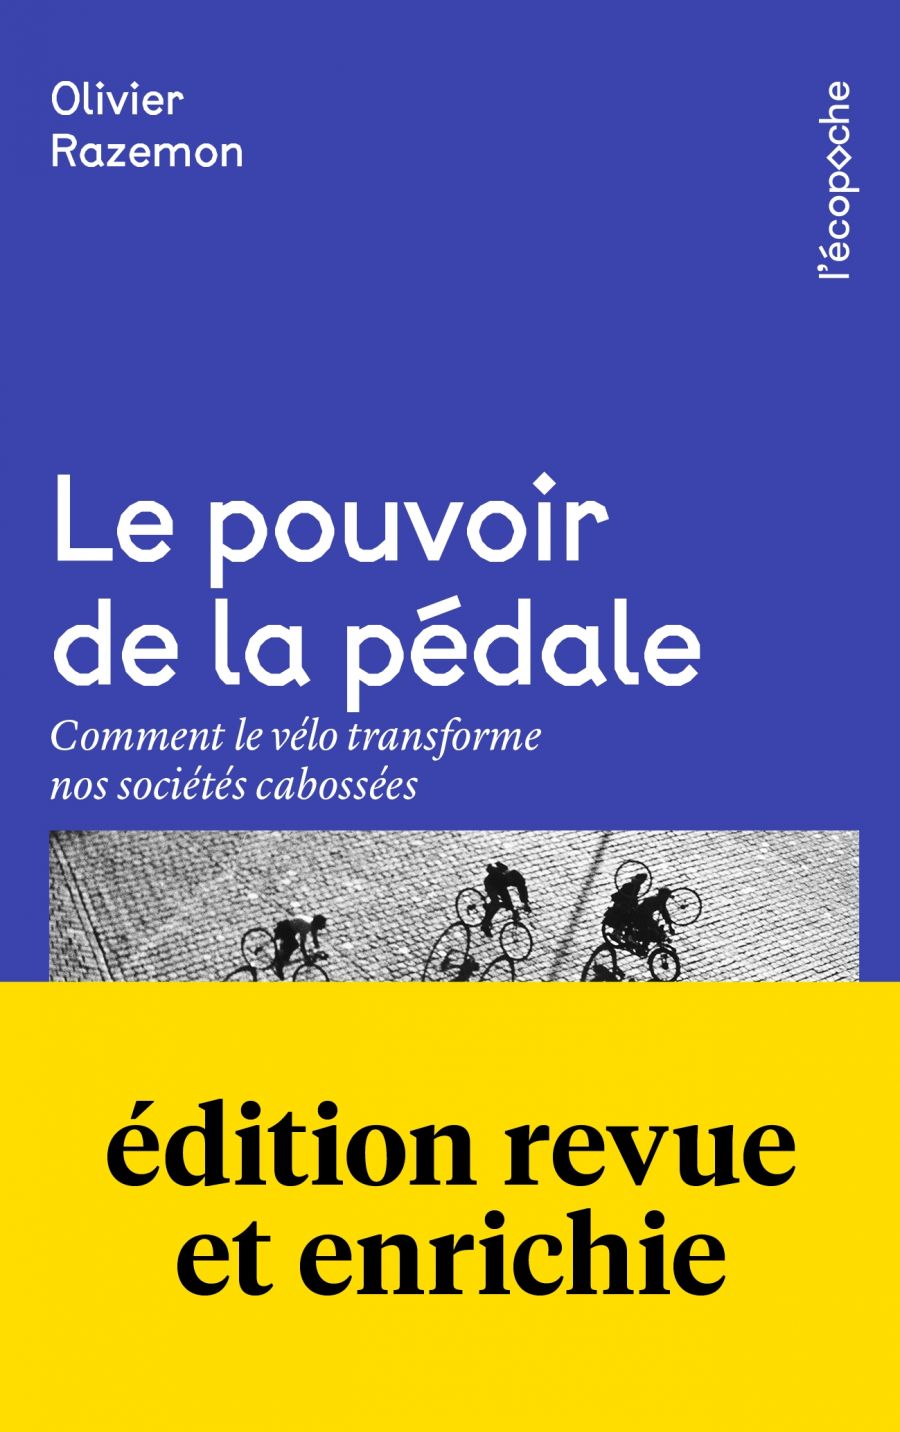 Olivier Razemon, Le pouvoir de la pédale : comment le vélo transforme nos sociétés cabossées, 2018, éditions Rue de l’échiquier, Paris